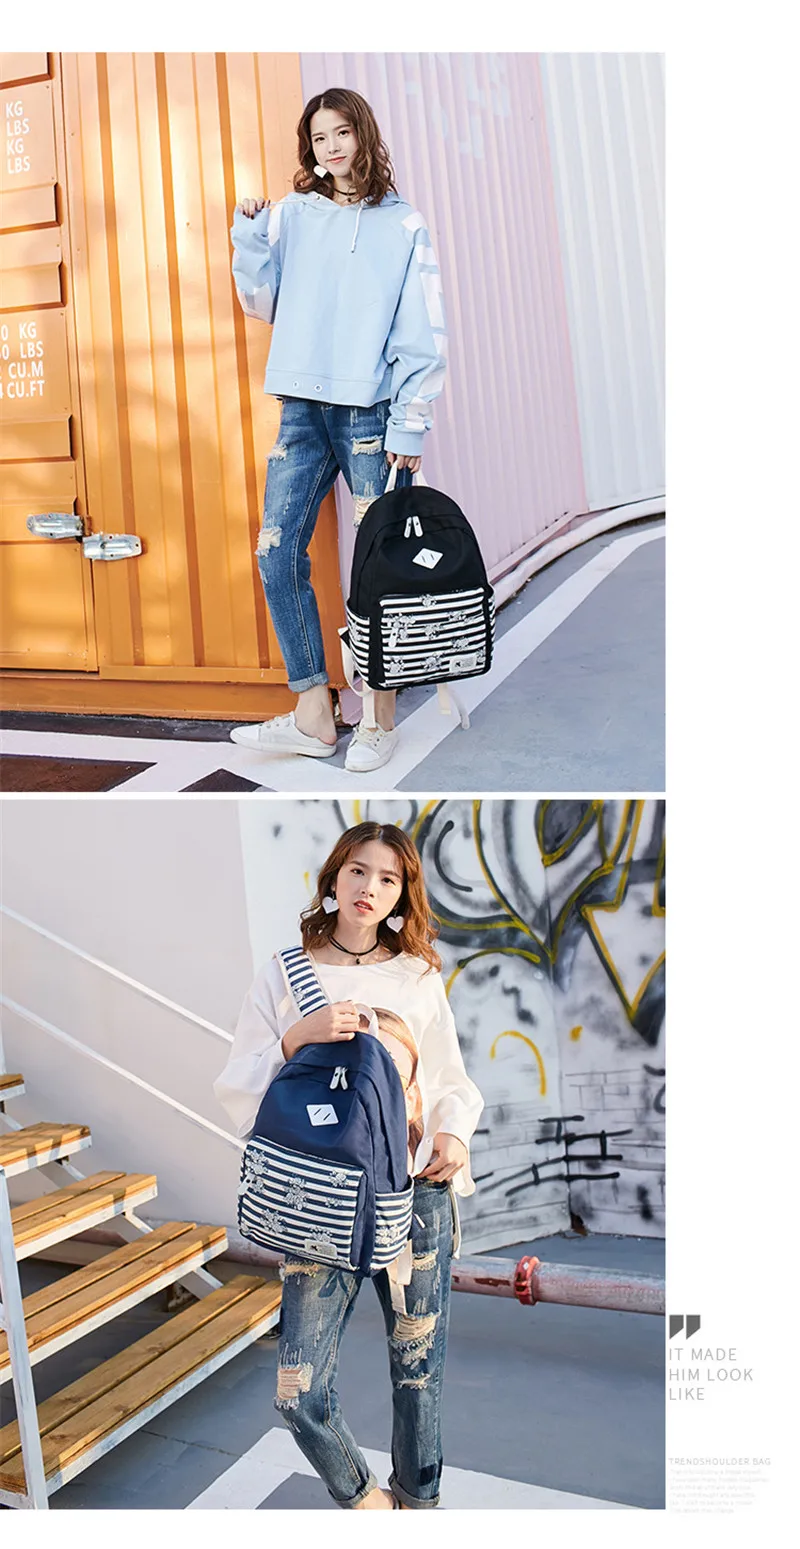 Для женщин рюкзак полоса Печать на холсте школьная сумка для подростков девочек элегантный дизайн рюкзак для путешествий для отдыха; рюкзак для ноутбука Mochila